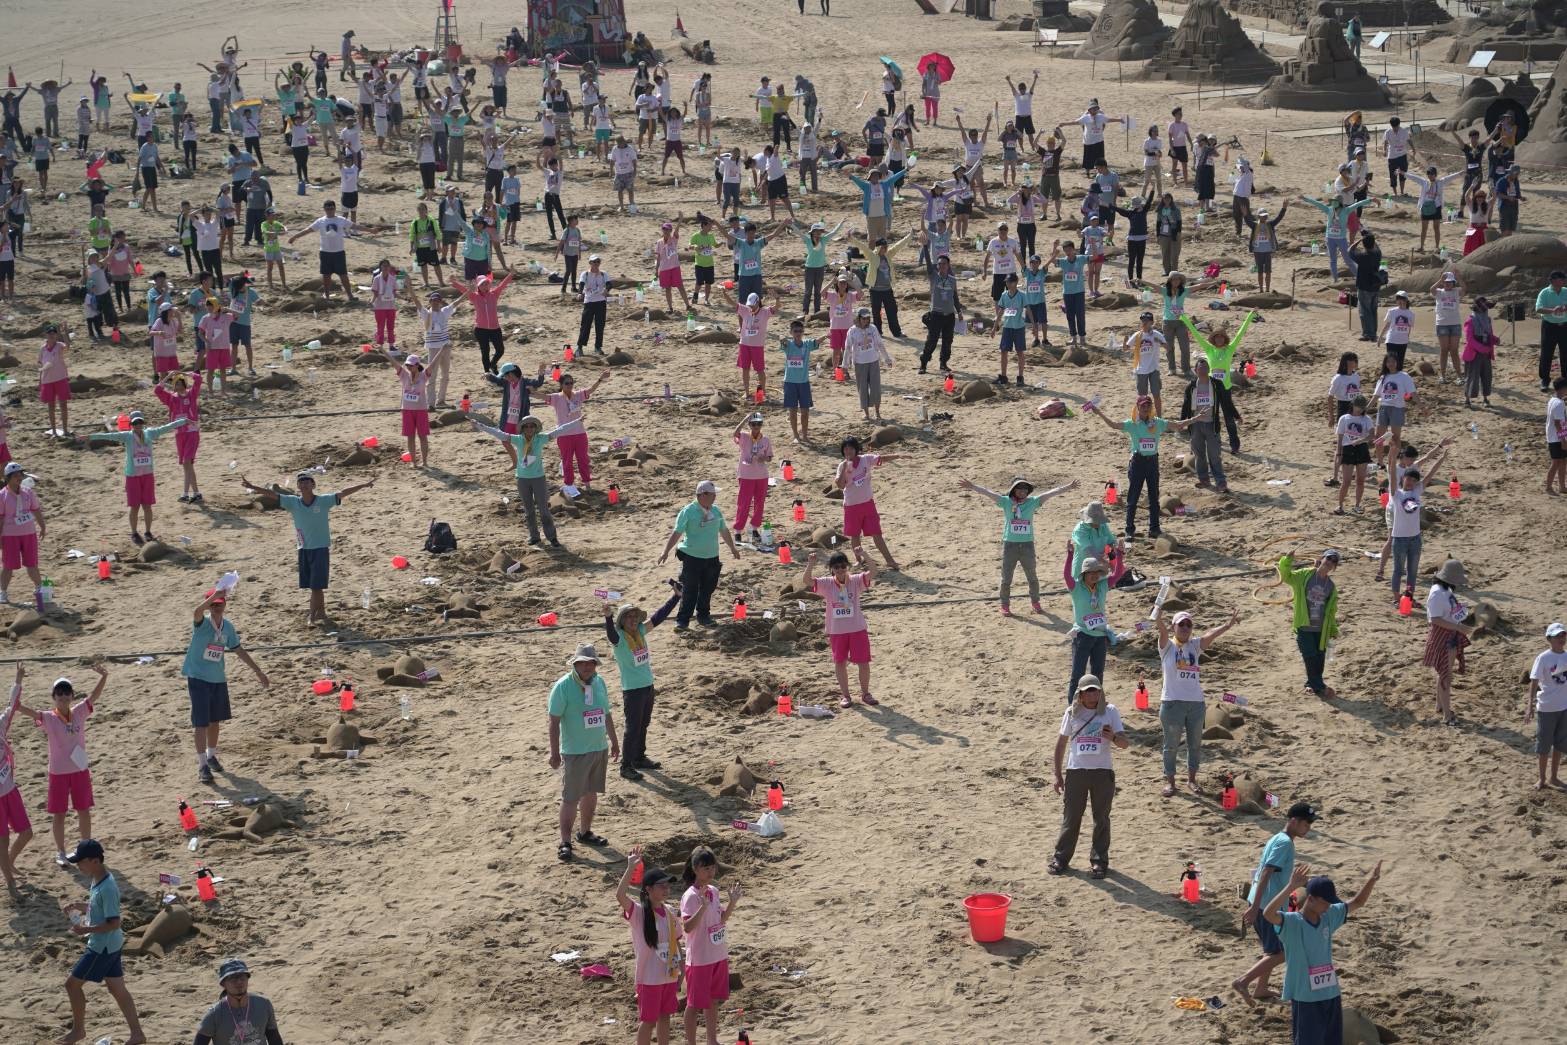 Международный сезон песчаных скульптур Fulong 2019 года 15 июня бросил вызов мировому рекорду Цзиньши - самому успешному созданию скульптуры из песка